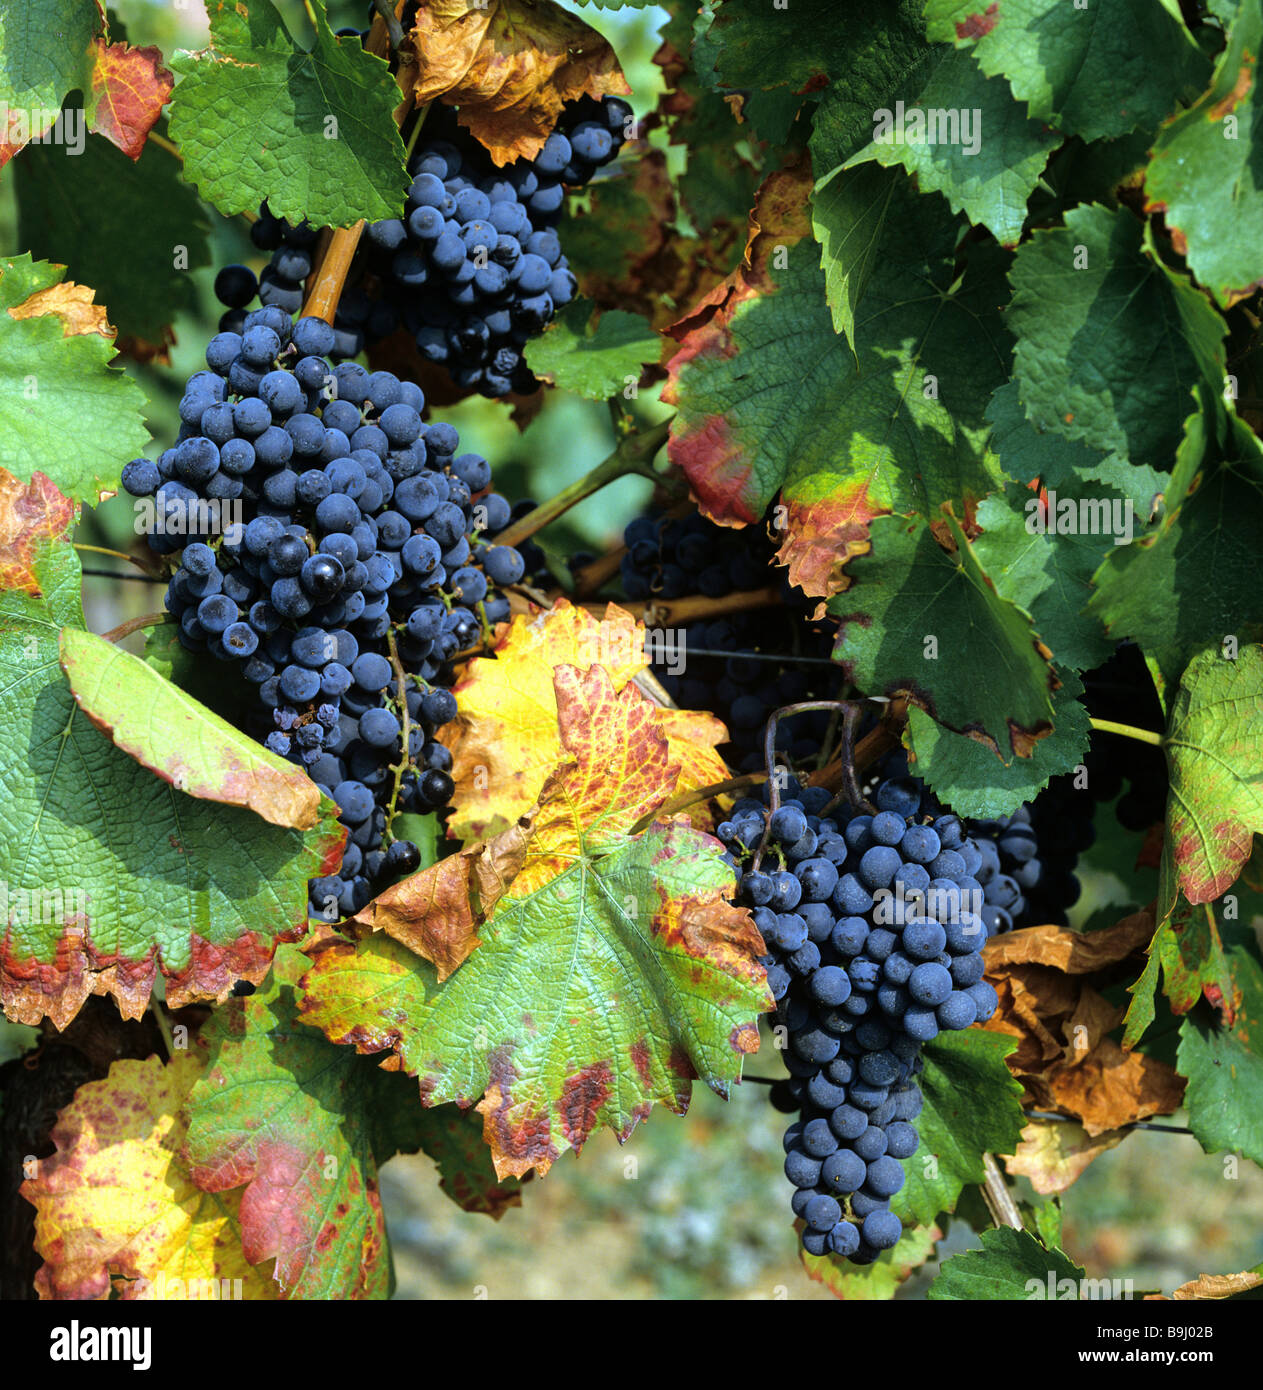 Common Grape Vine (Vitis vinifera), grapes, vines, winegrowing Stock Photo